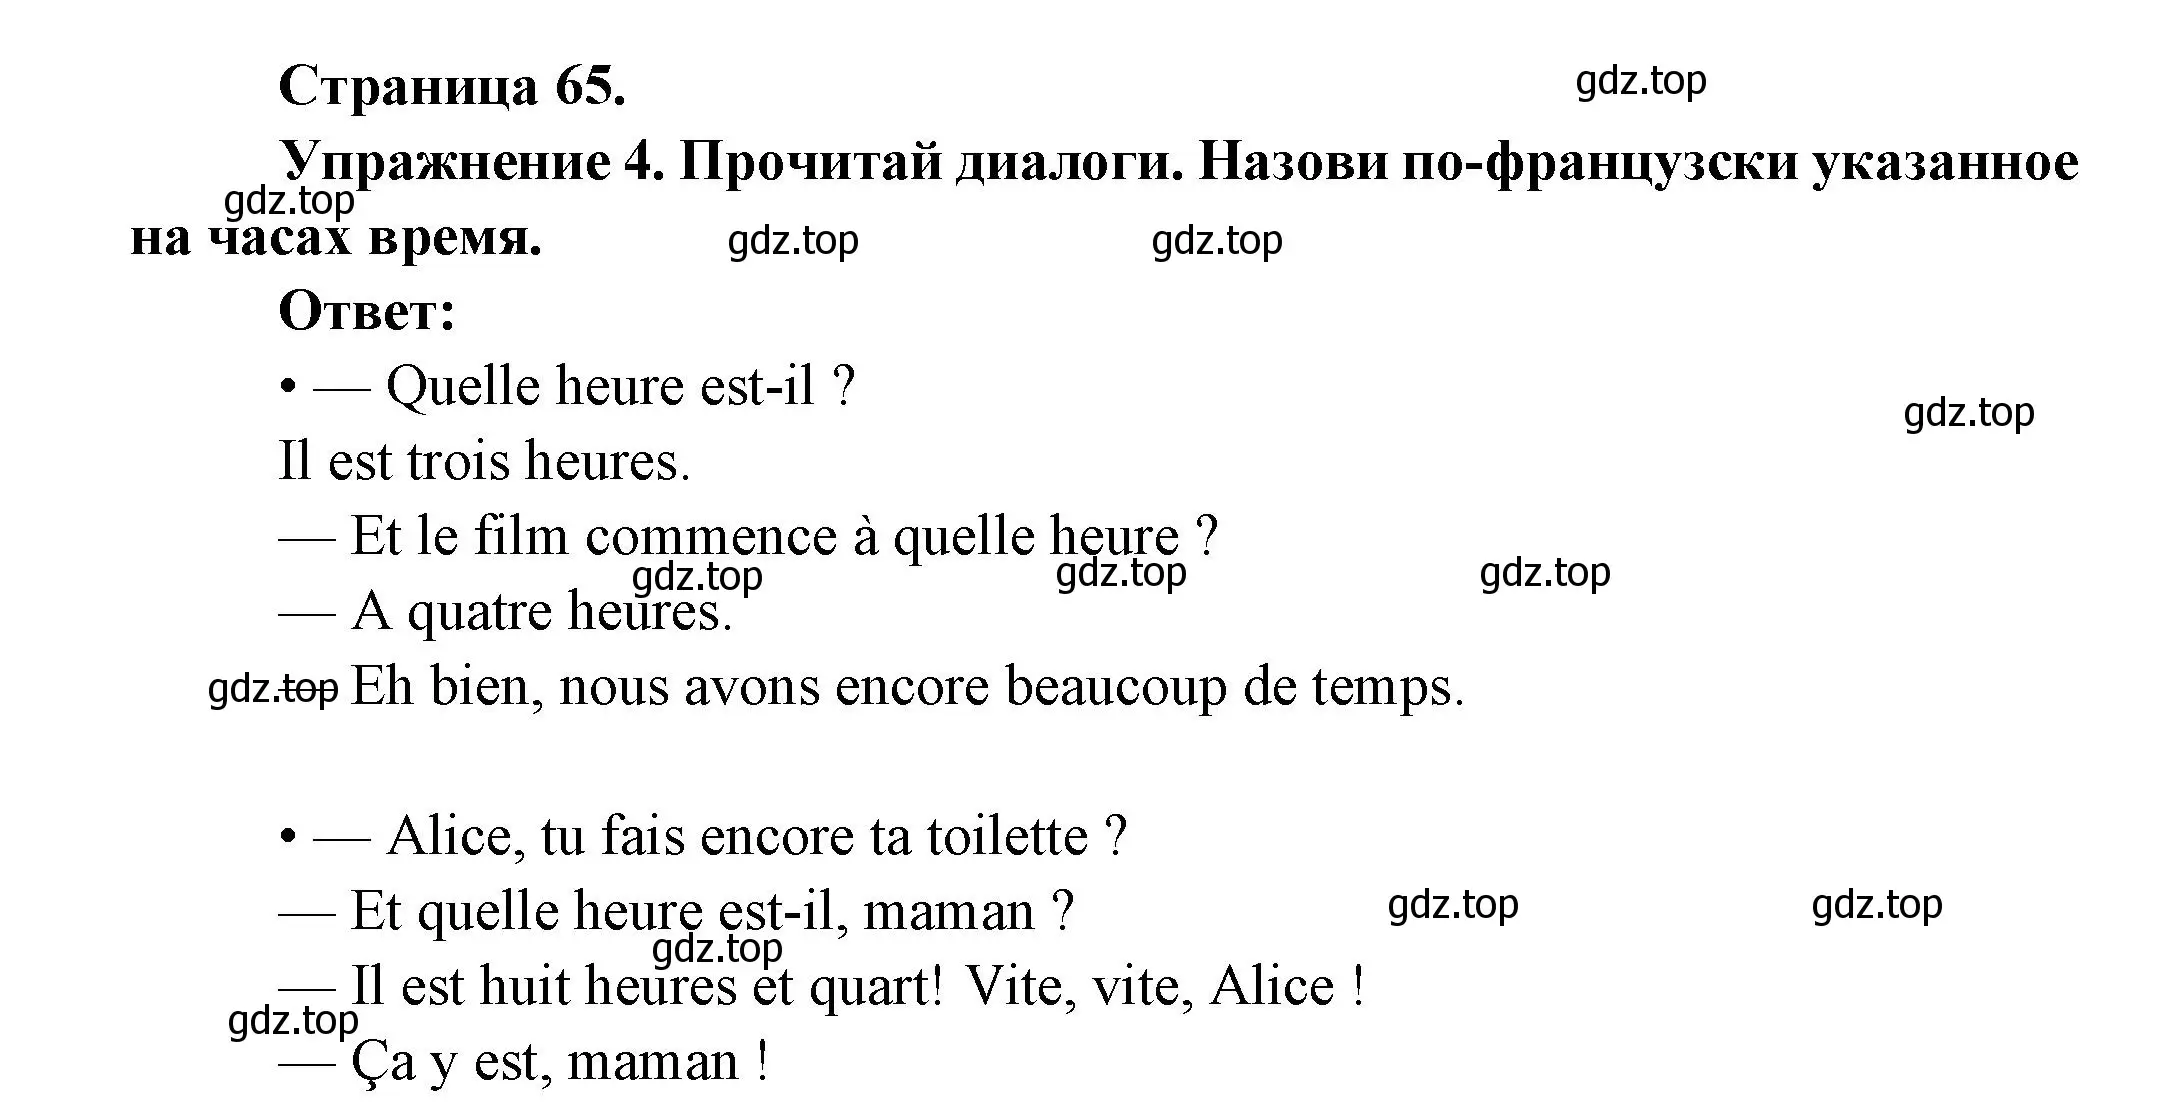 Решение номер 4 (страница 65) гдз по французскому языку 5 класс Береговская, Белосельская, учебник 1 часть